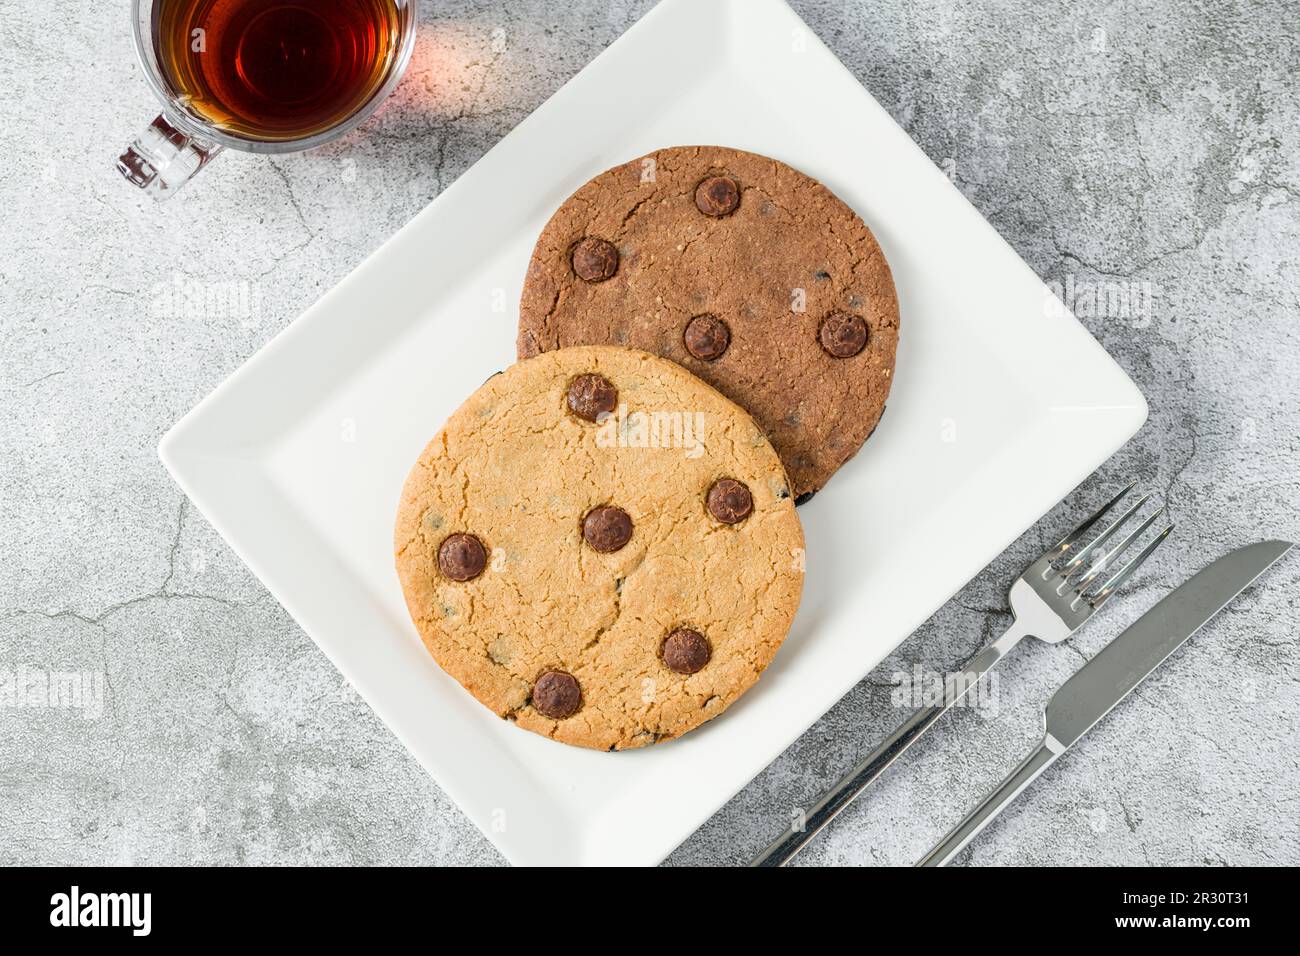 Biscuit aux pépites de chocolat emballé dans un sac en papier avec une boisson à côté sur une table en pierre Banque D'Images